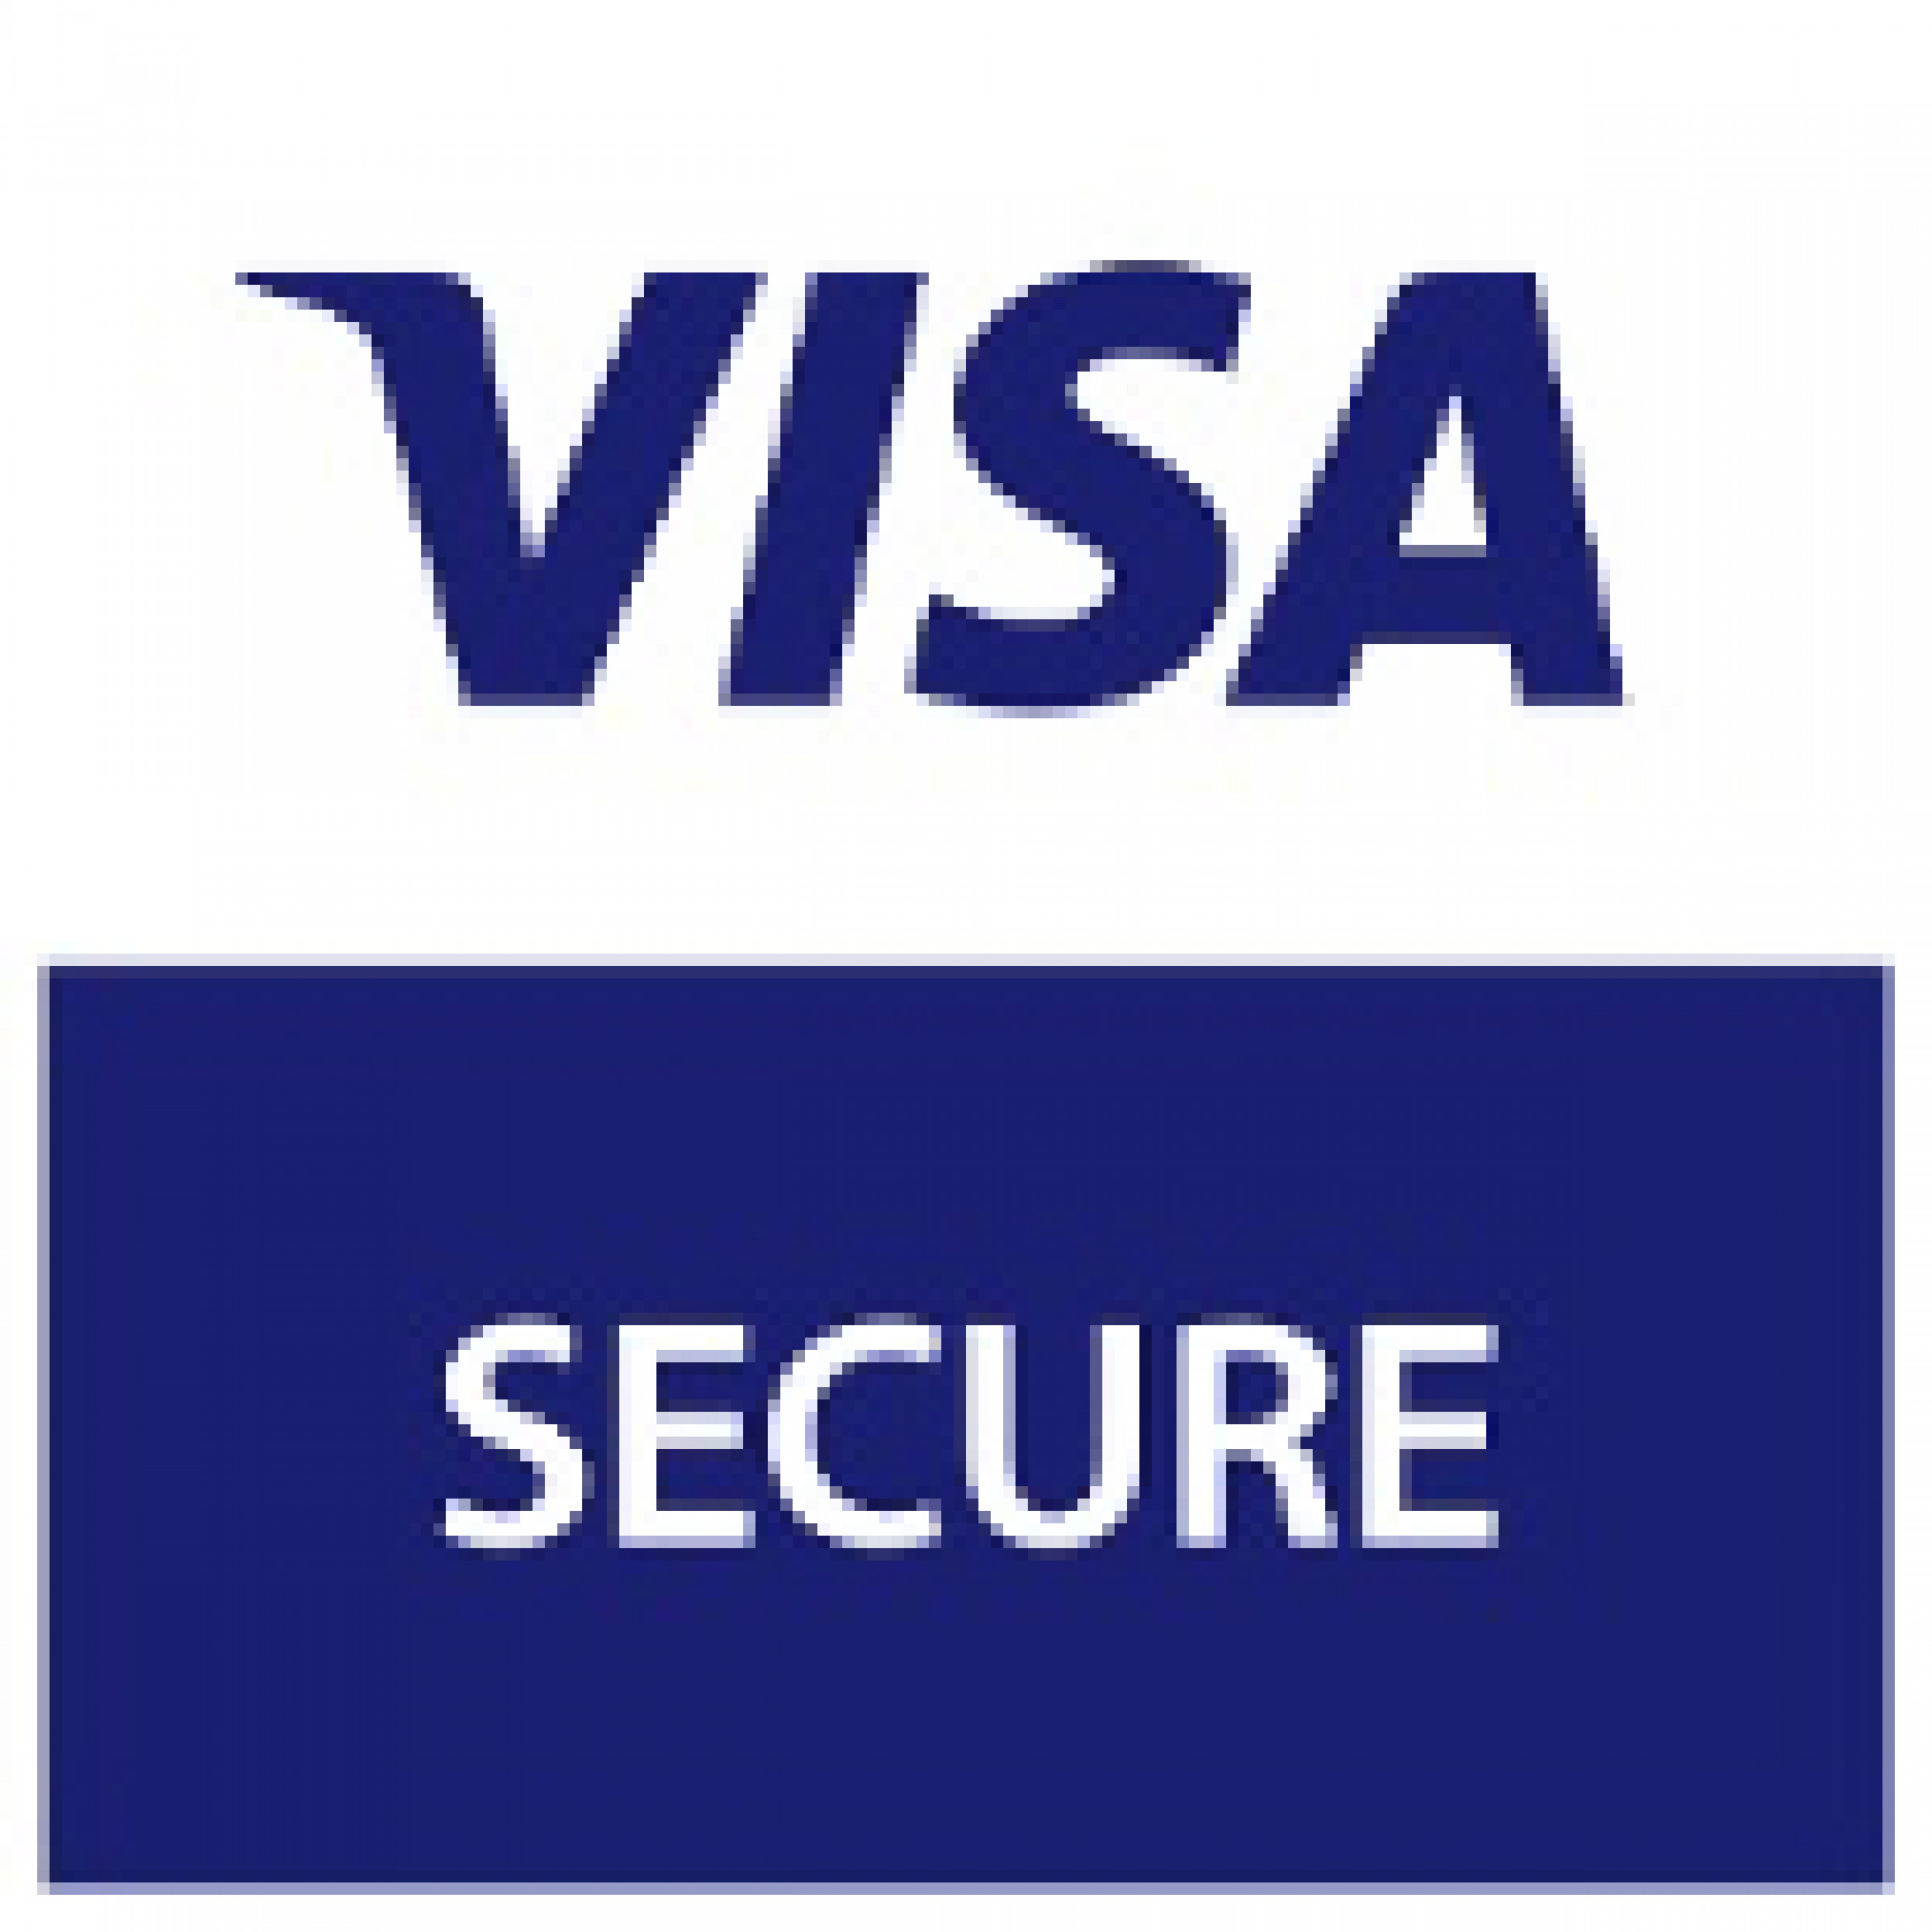 T me ccn visa. Логотип visa. Visa secure. Логотип verified by visa. Иконка visa secure.